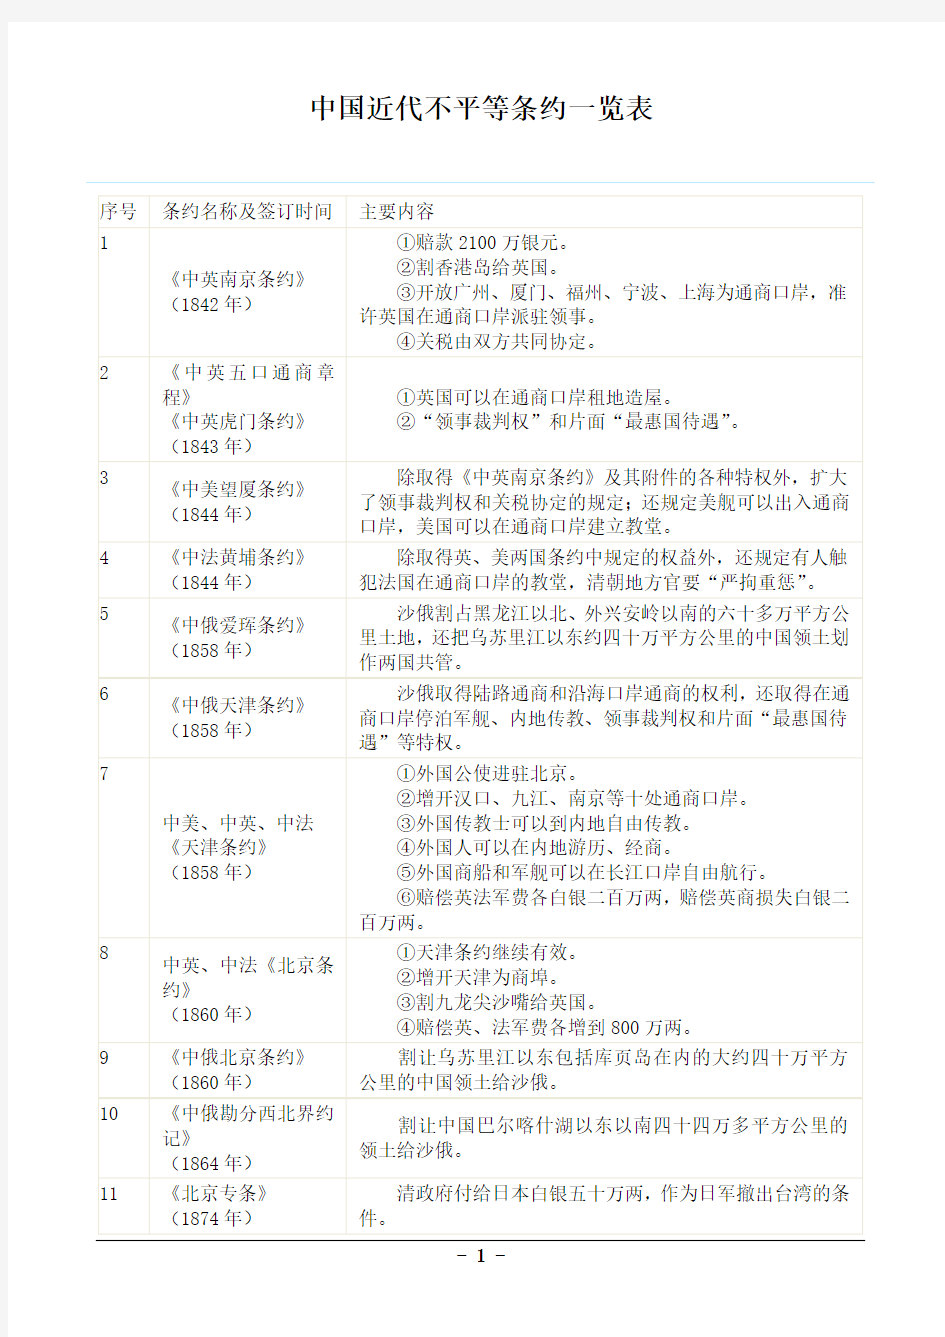 中国近代不平等条约一览表及巧计方法